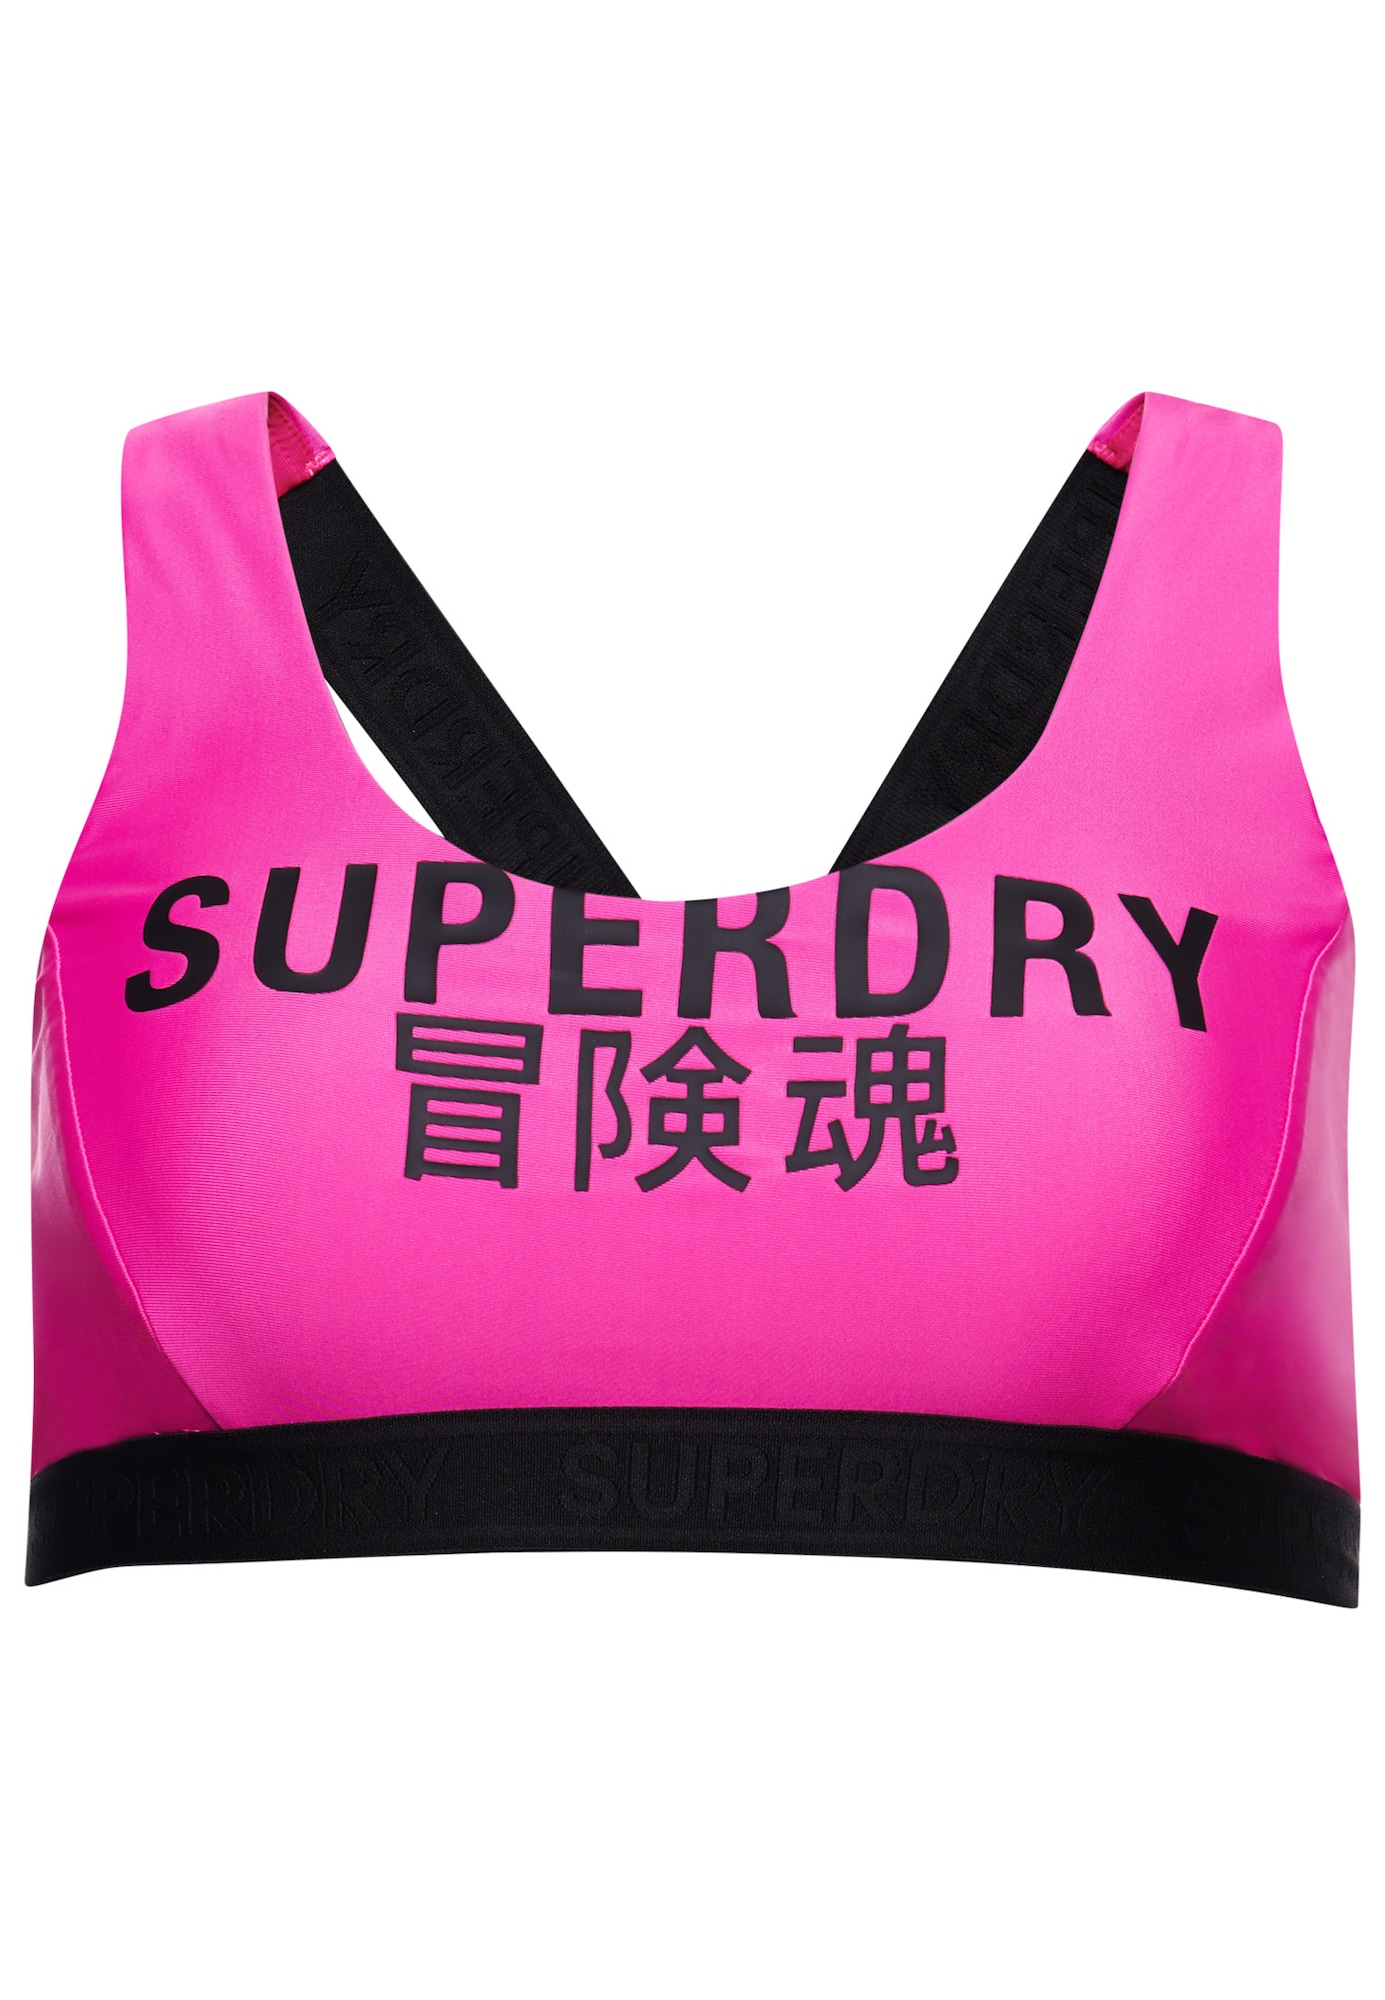 Superdry Bikinio viršutinė dalis rožinė / juoda